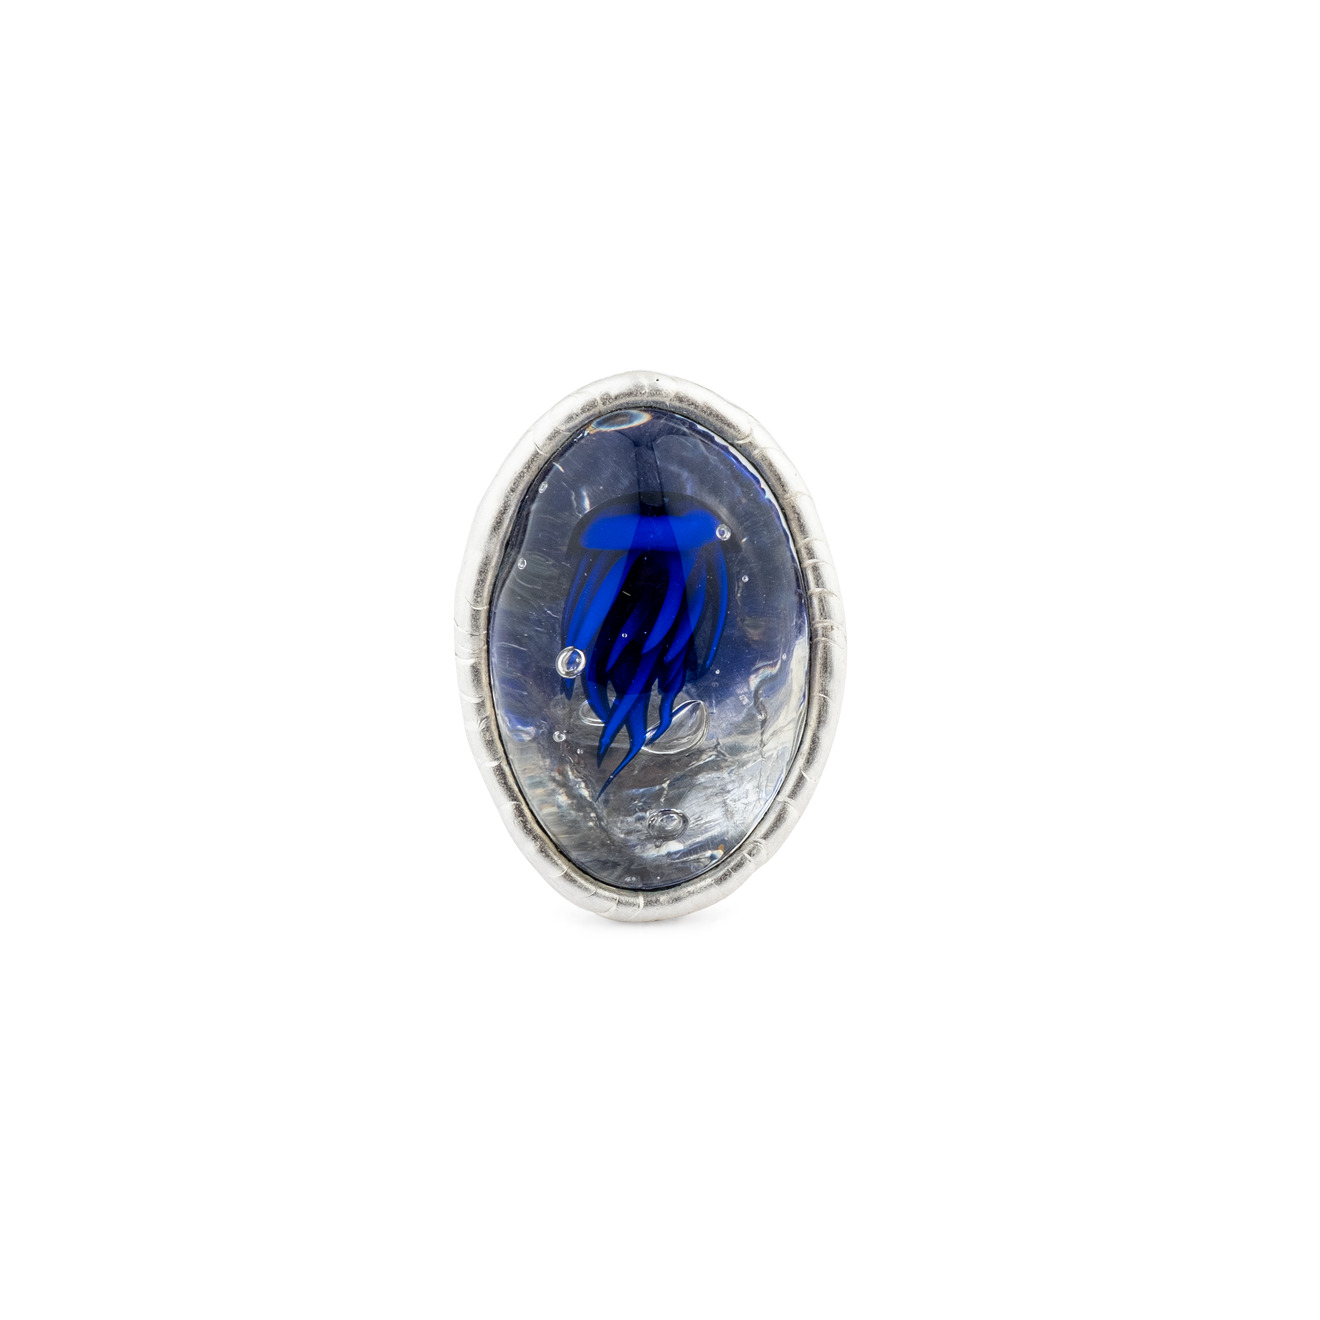 Poison Drop Lab Кольцо с серебряным покрытием с синей медузой и прозрачным стеклом poison drop lab кольцо с серебряным покрытием с нарисованным глазом